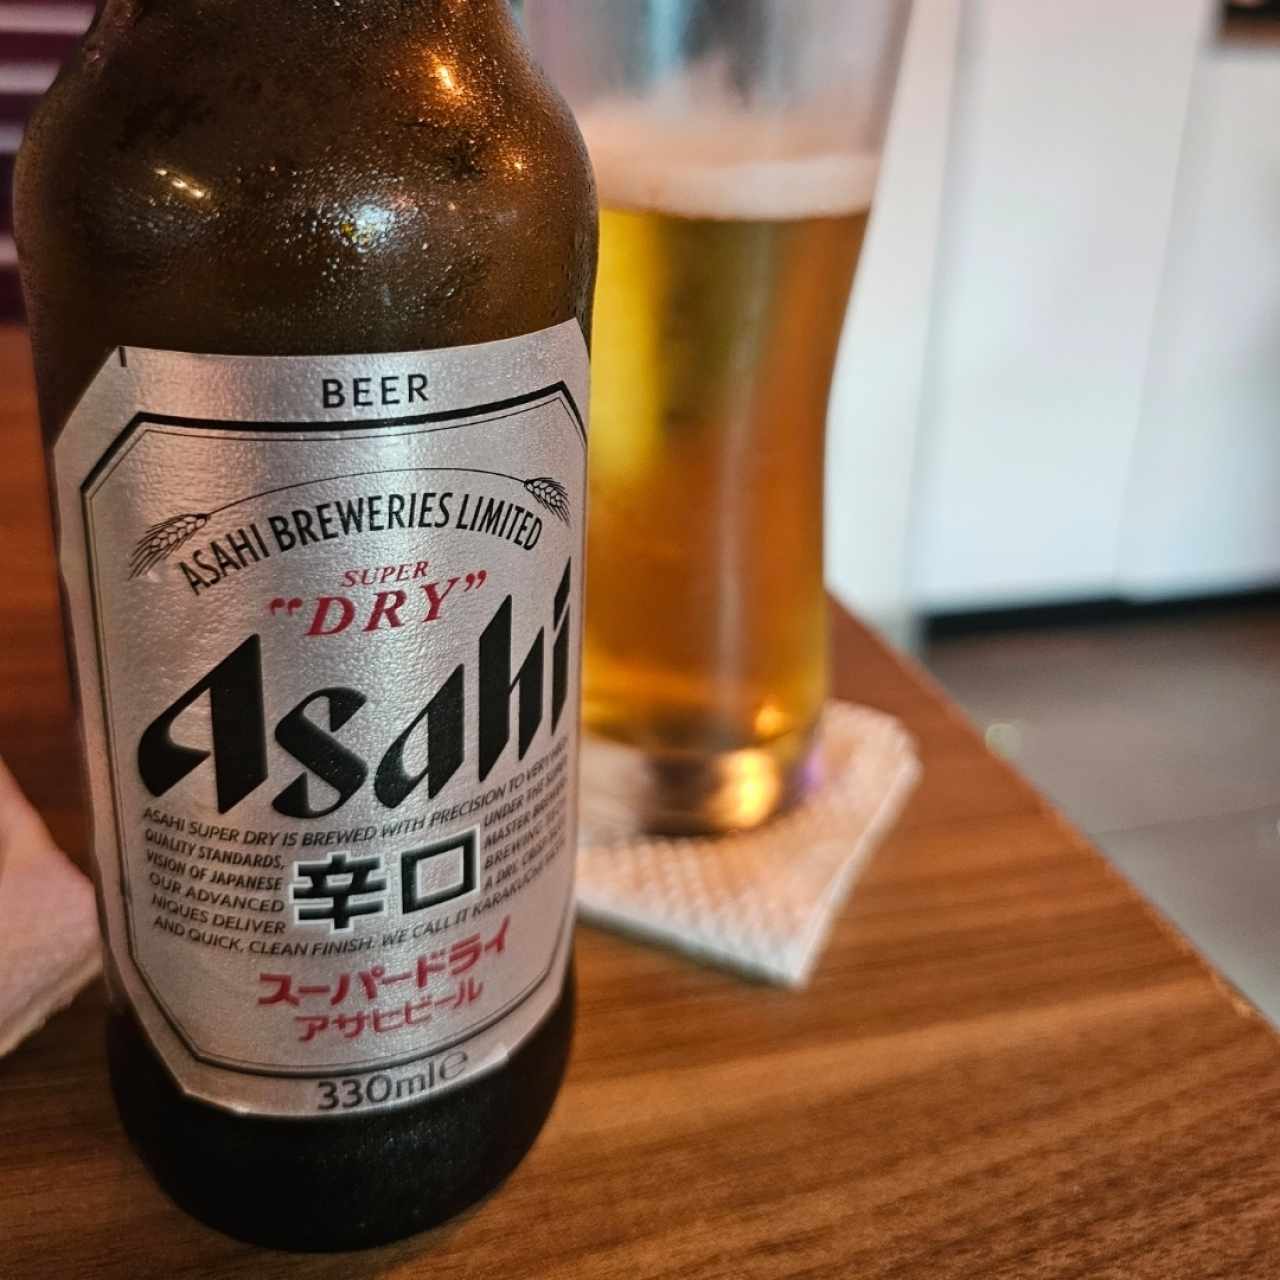 Cerveza japonesa, sabor ligero, me gustó! 